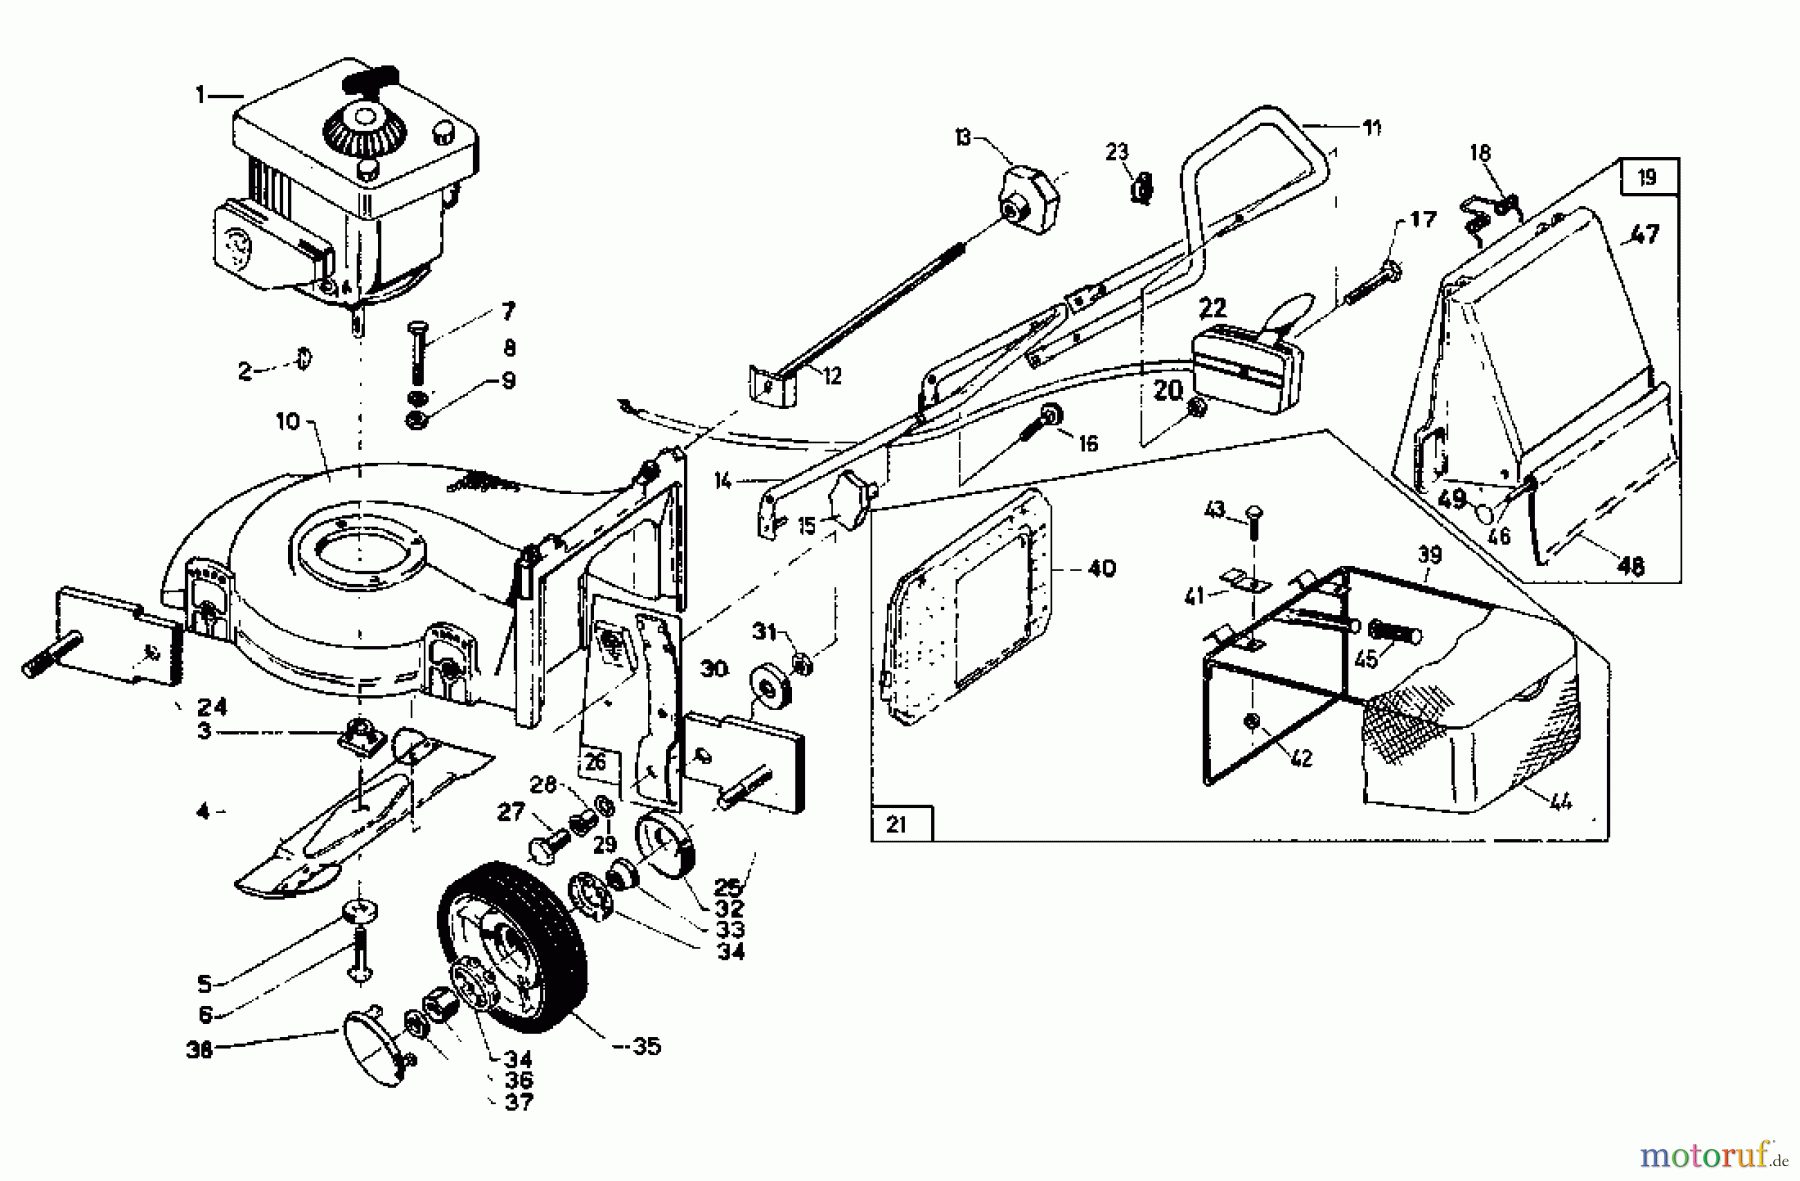  Rotaro Motormäher ROTARO  48 186-0156  (1986) Grundgerät